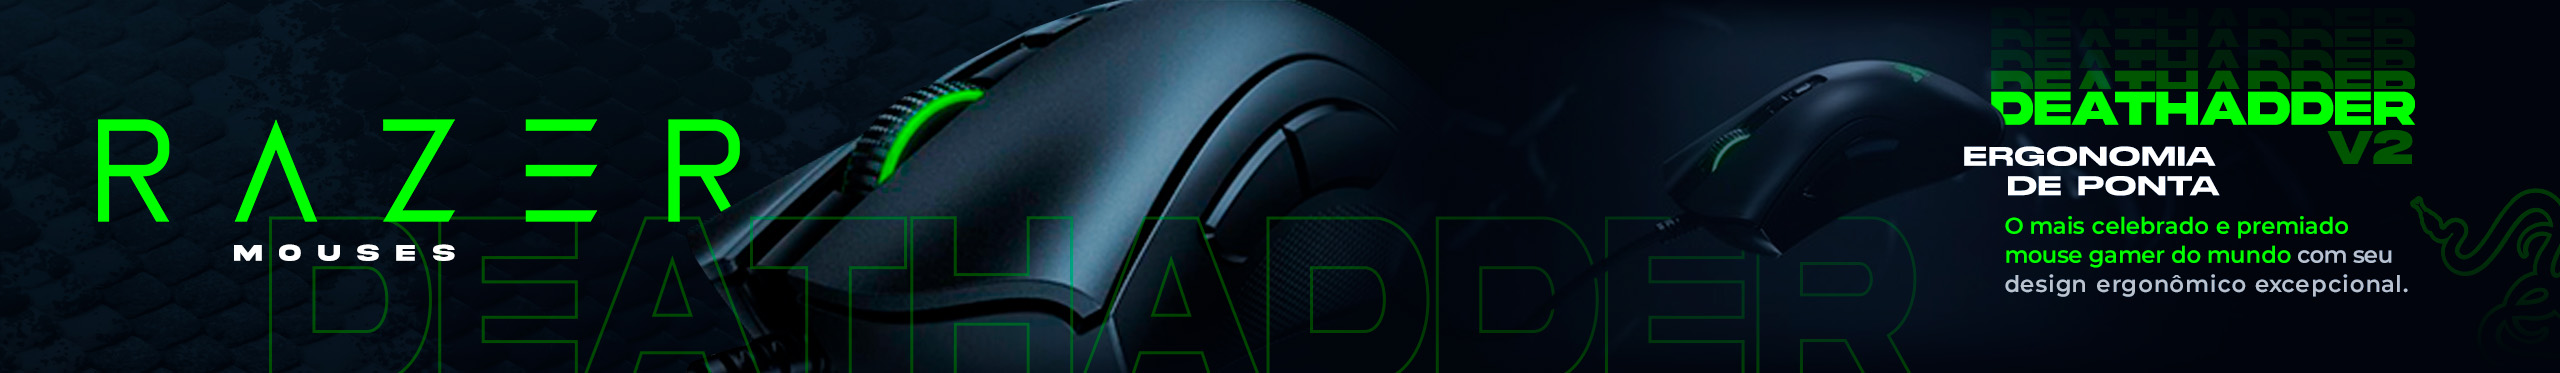 Os mouses gamer Razer Deathadder têm ergonomia de ponta perfeita para a gameplay.